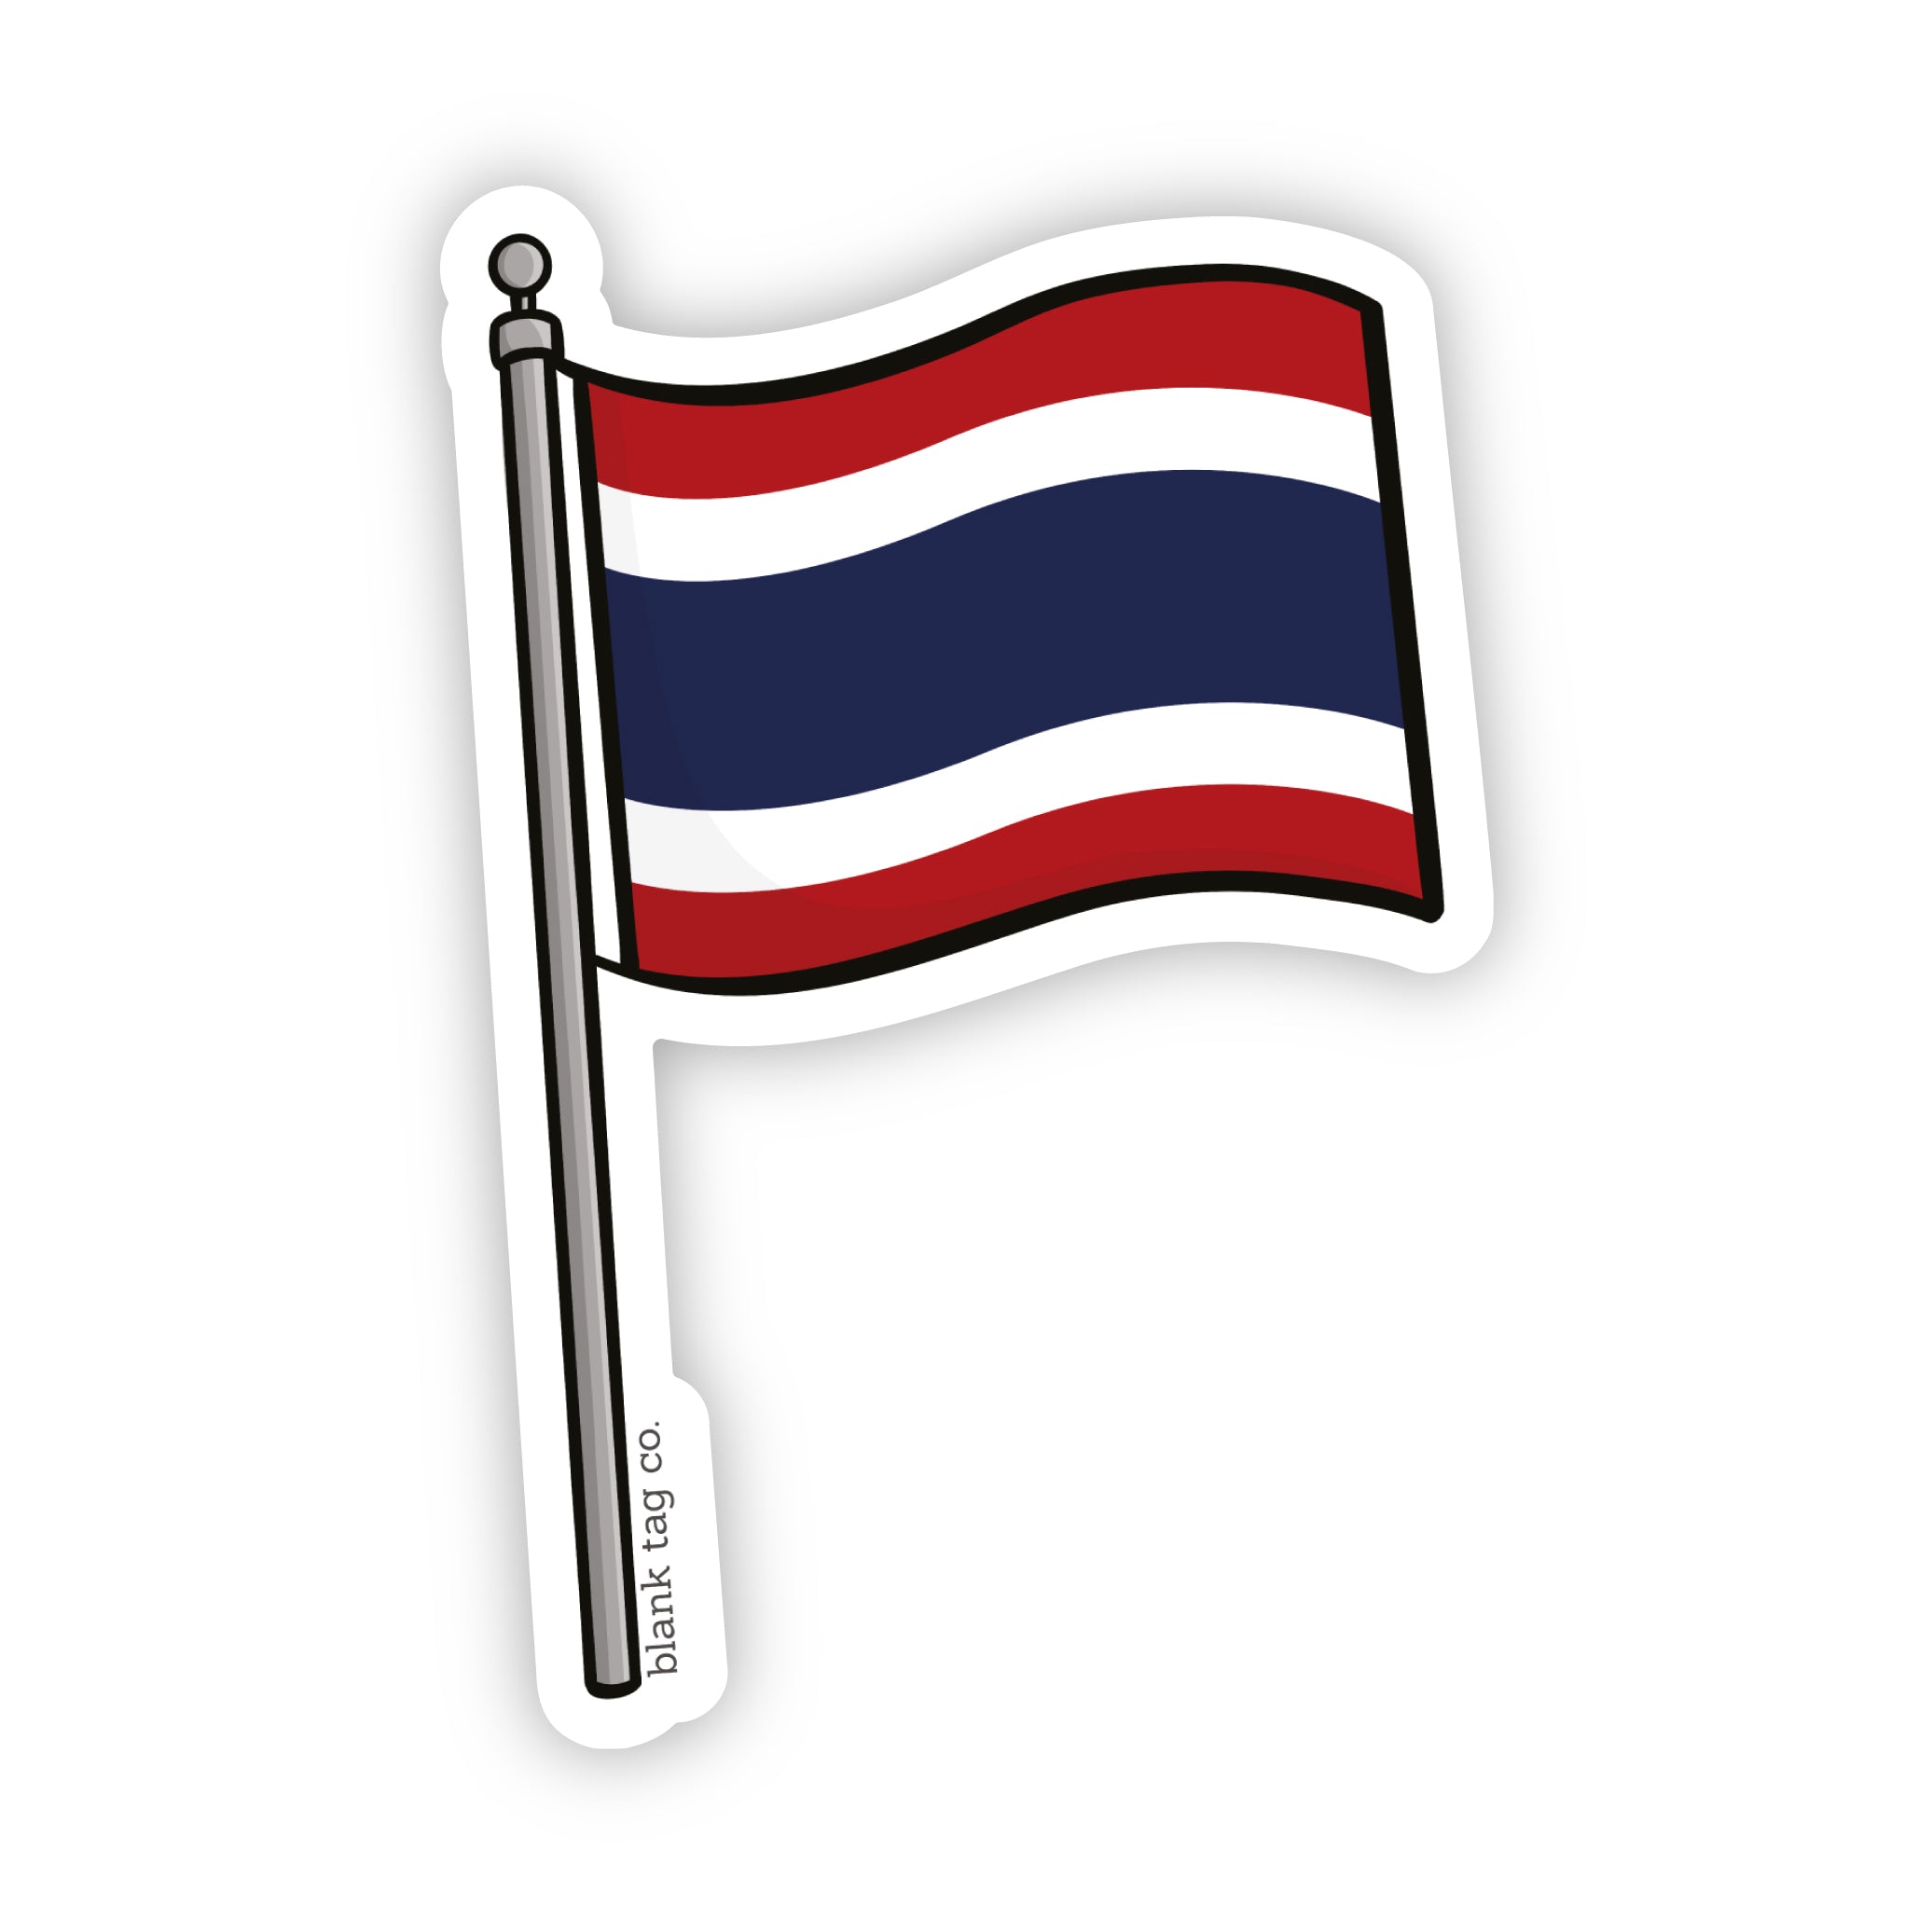 The Thailand Flag Sticker